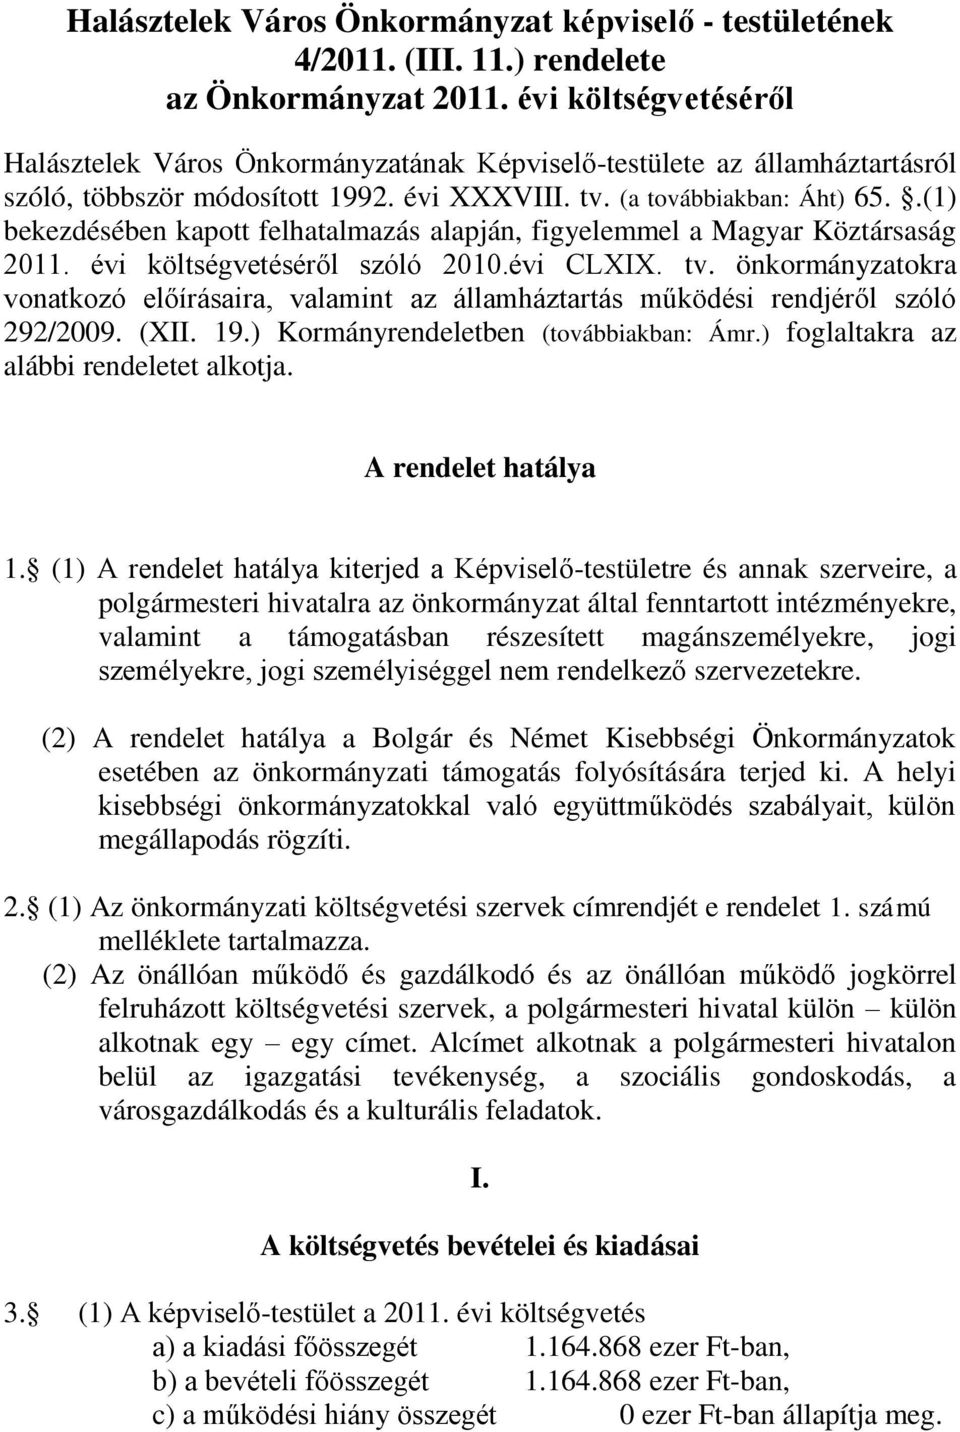 .(1) bekezdésében kapott felhatalmazás alapján, figyelemmel a Magyar Köztársaság 2011. évi költségvetéséről szóló 2010.évi CLXIX. tv.